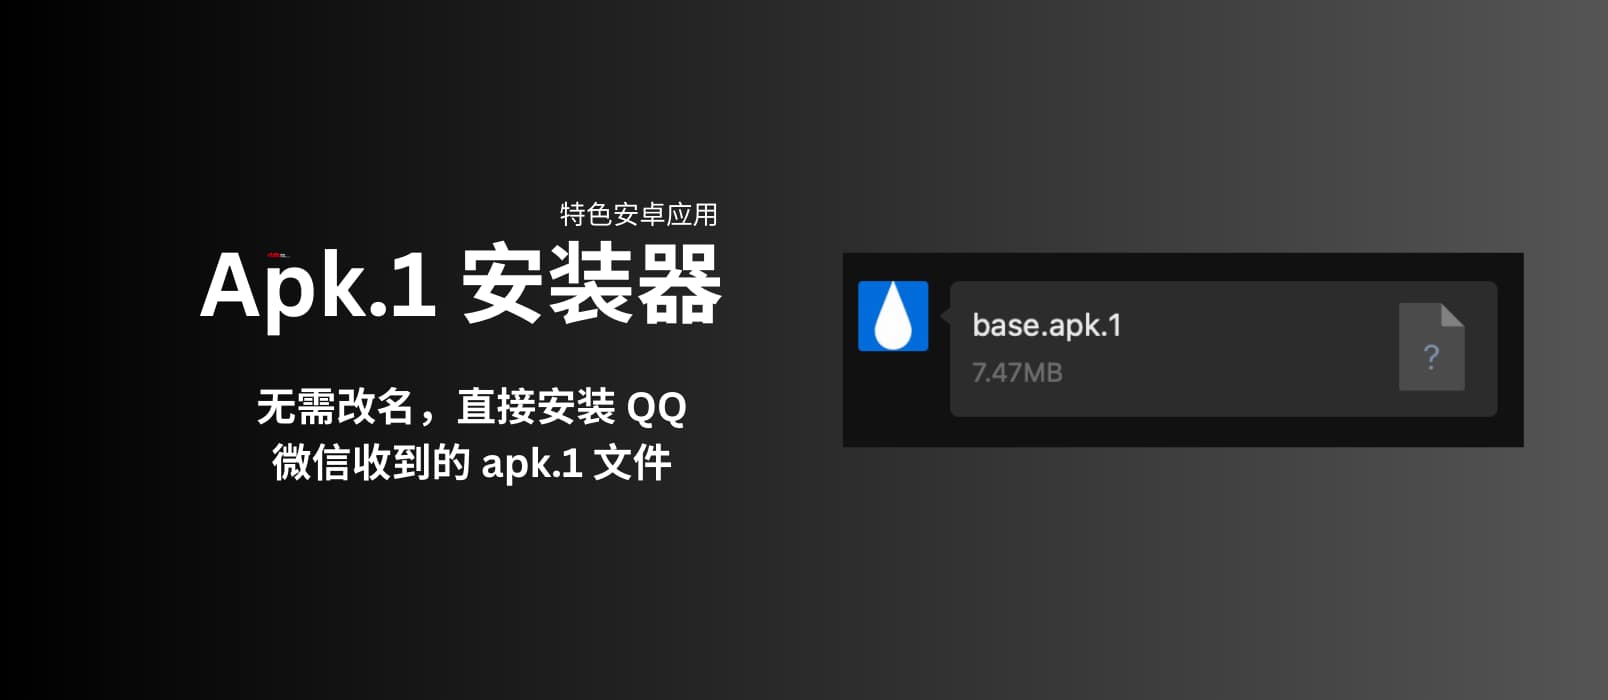 Apk.1 安装器 - 特色安卓应用：无需改名，直接安装 QQ、微信收到的 apk.1 文件